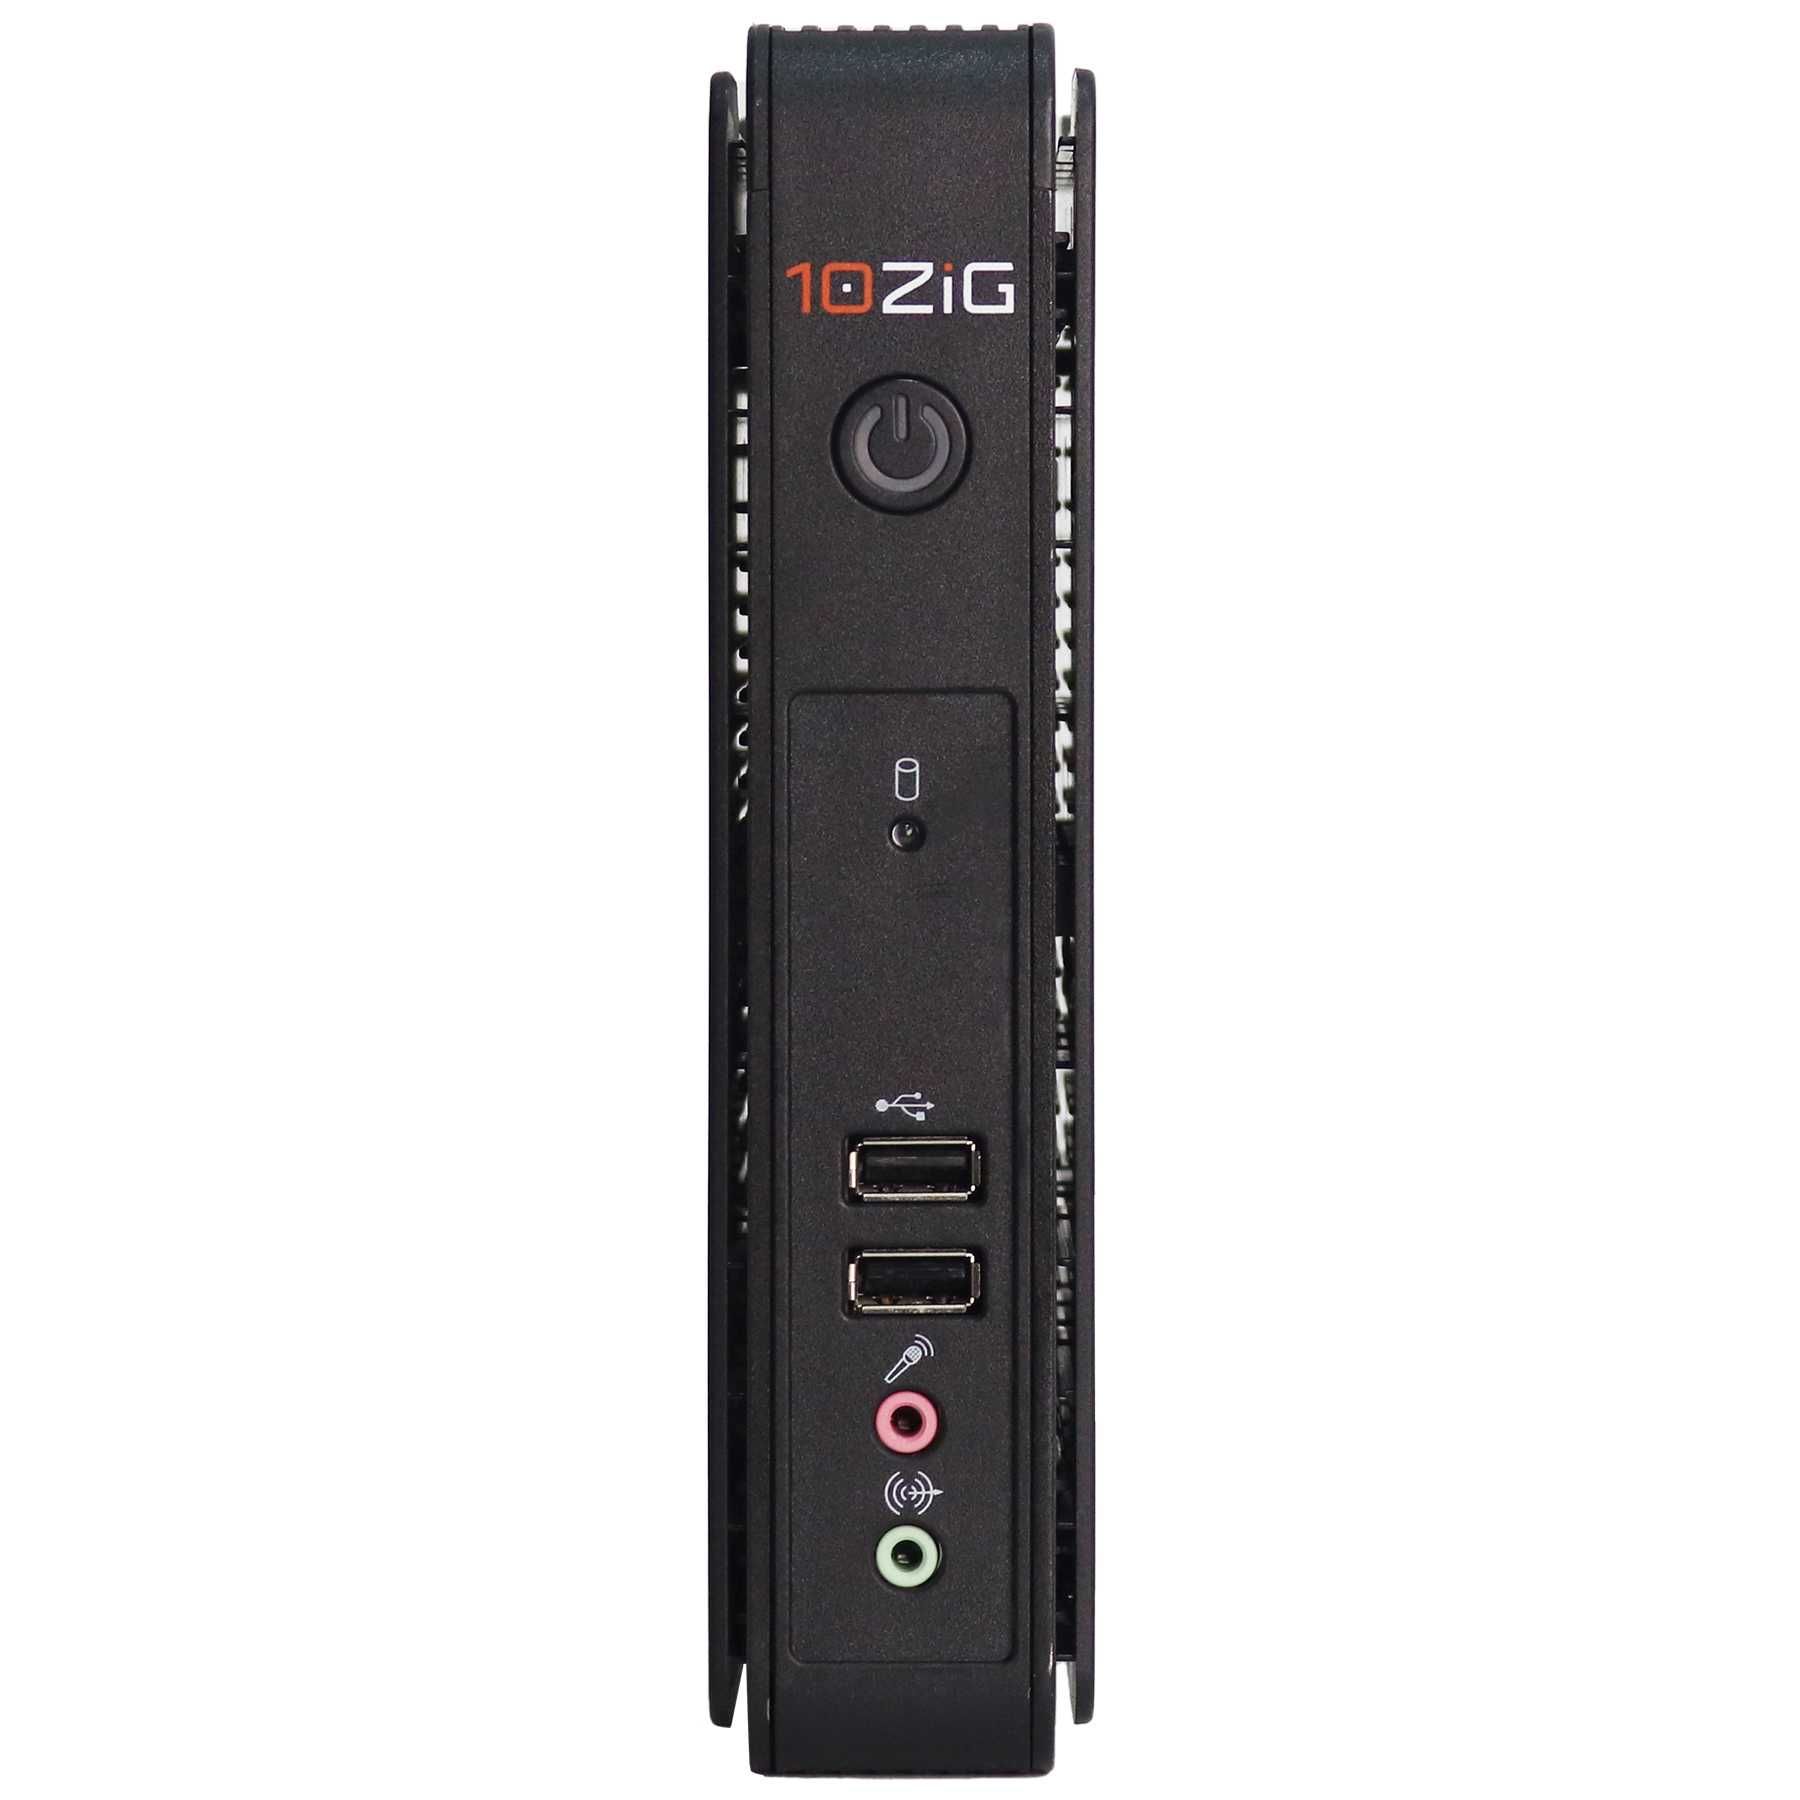 Тонкий клієнт 10ZIG Zero 5848qdc Celeron J1900 2Gb RAM 1.8Gb Flash